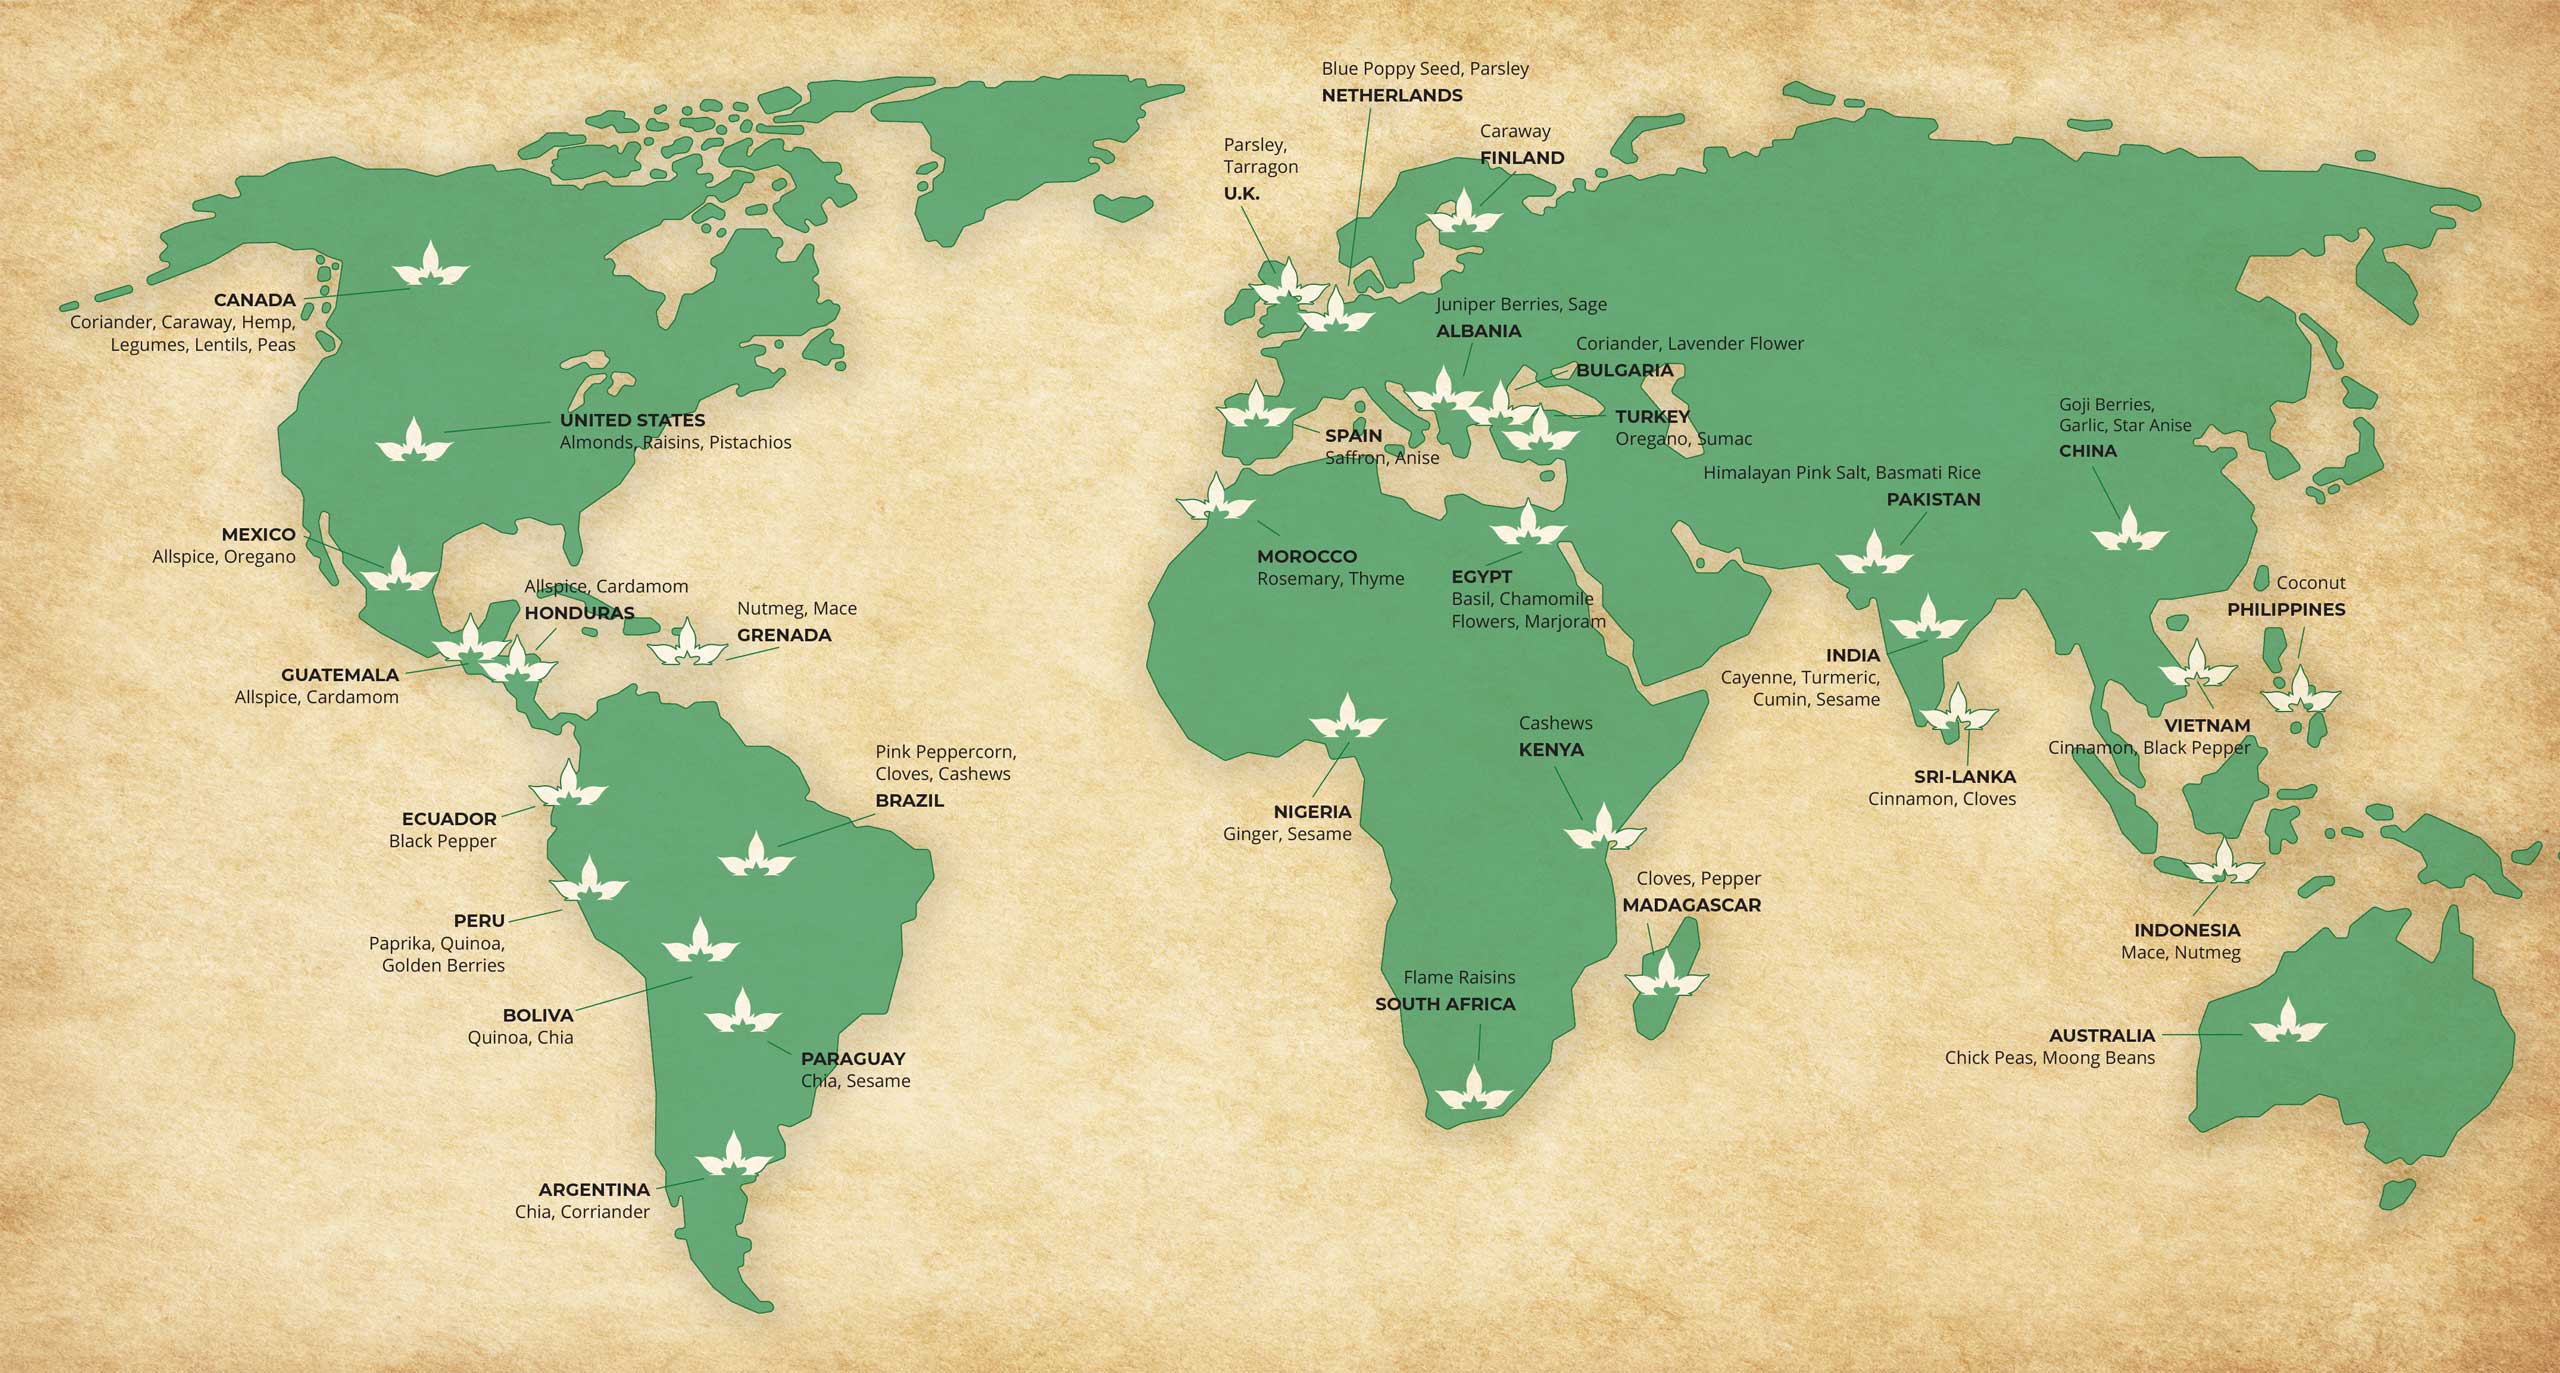 Shashi world ingredient map